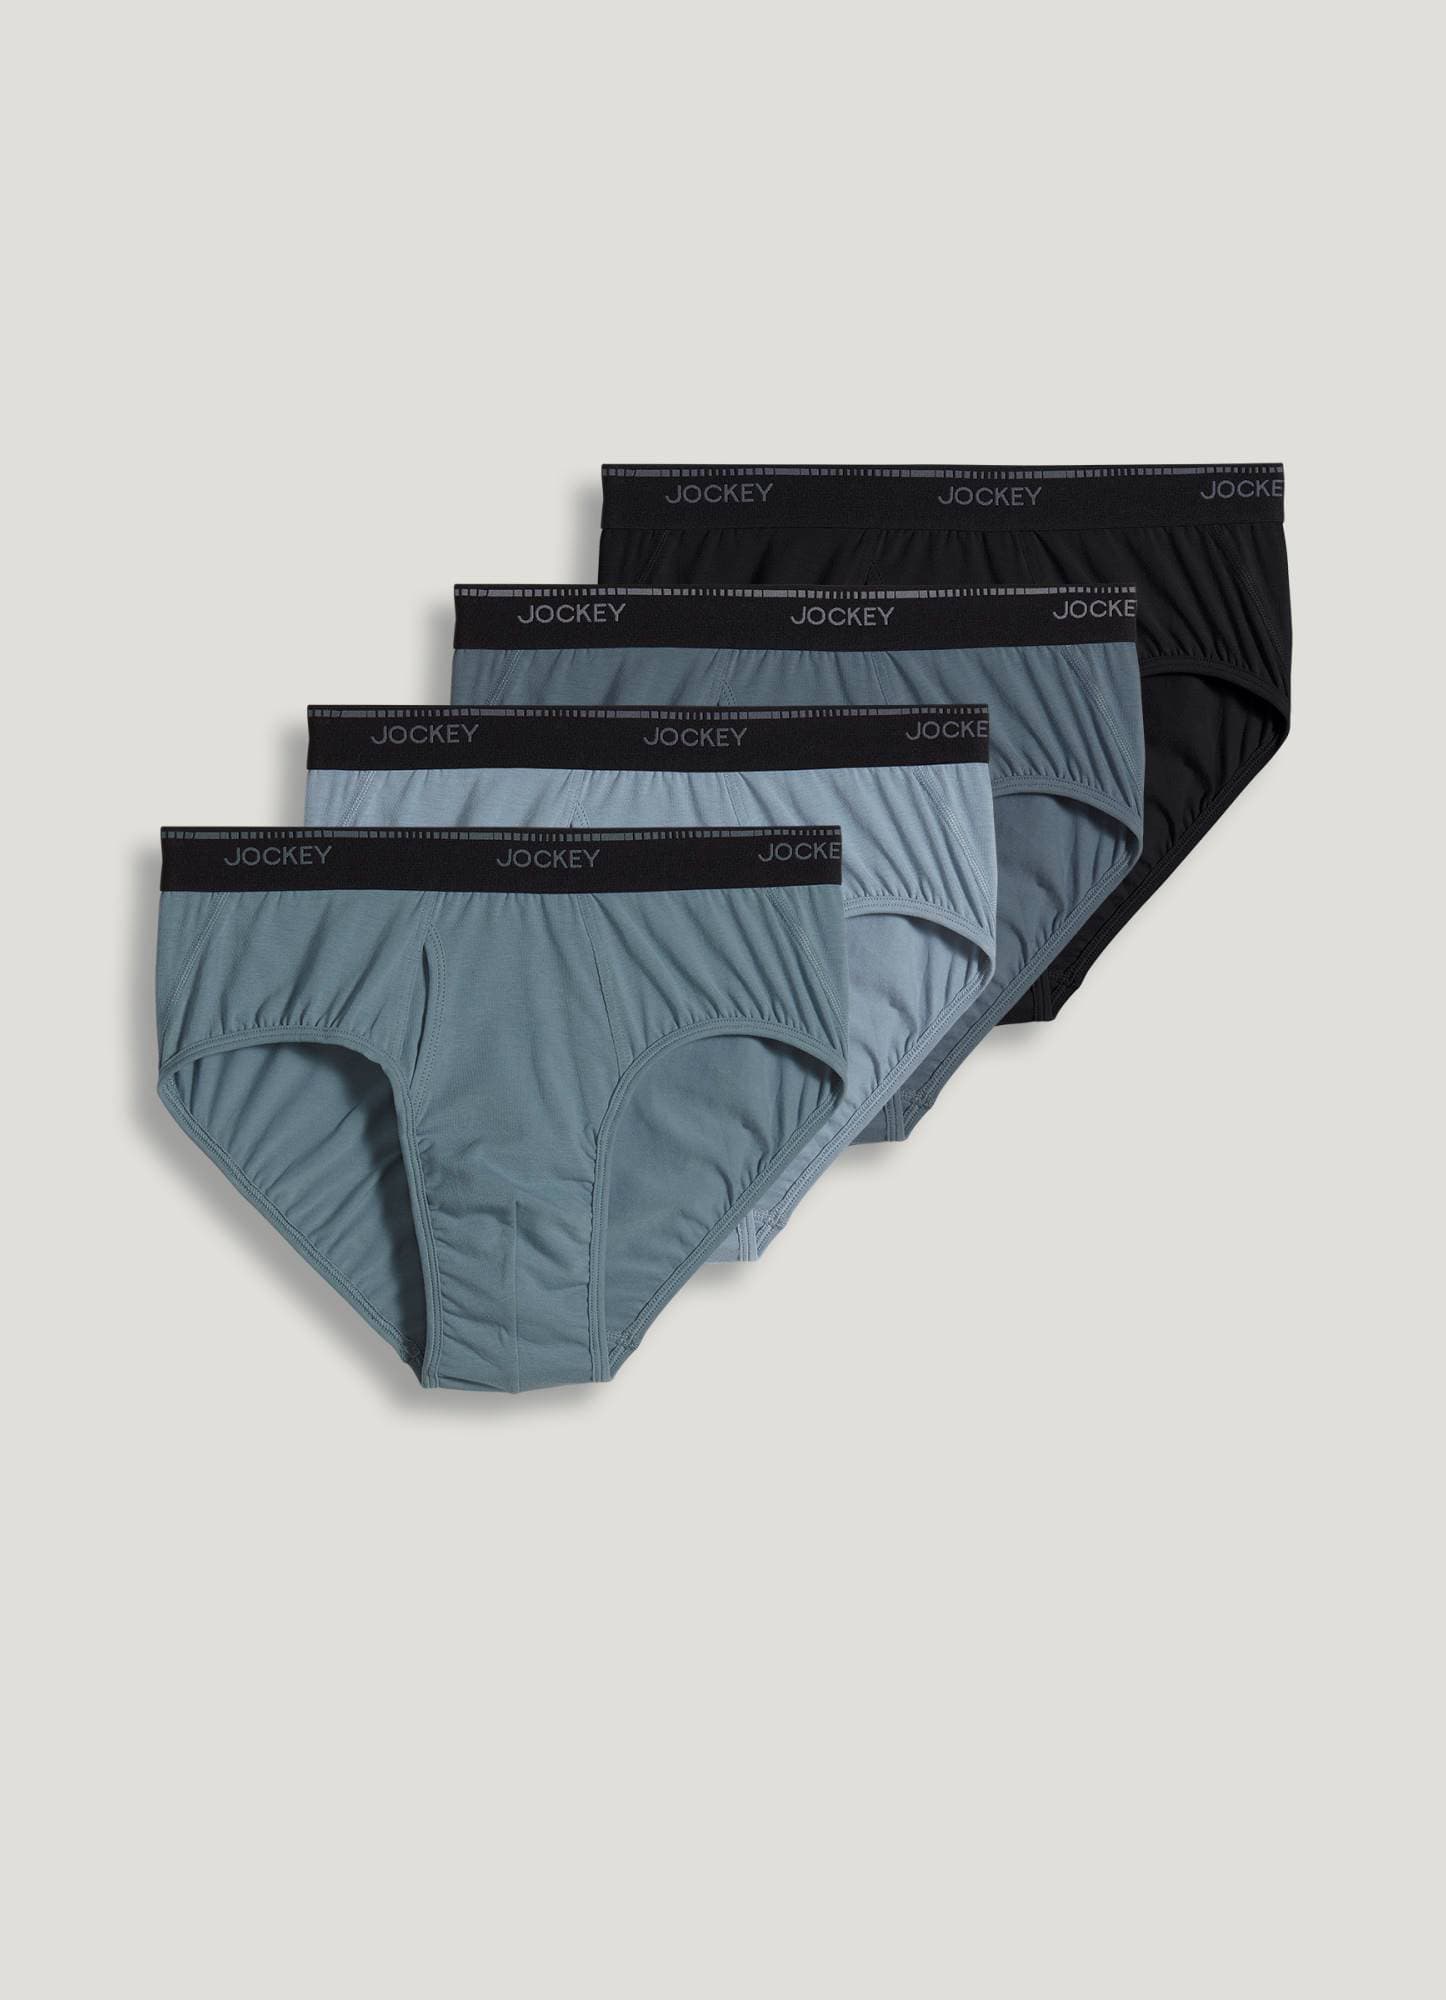 Jockey Brief, 4-Pack - Underwear